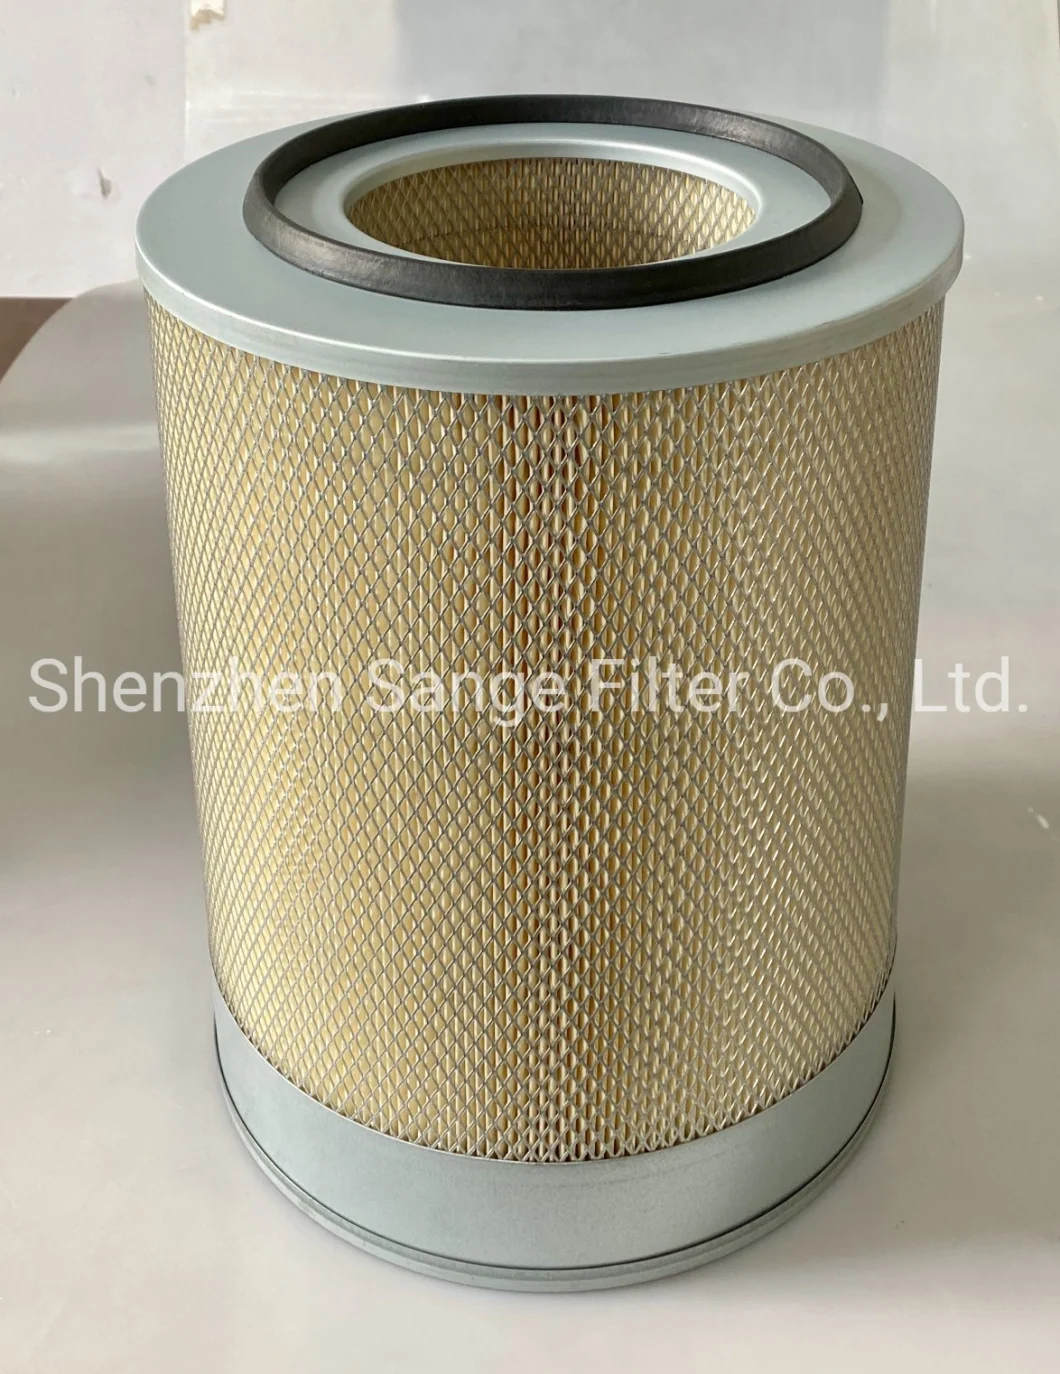 High Efficiency Air Compressor Parts Air Purifier Air Filter 88290001-469 2250125-365 2250127-684